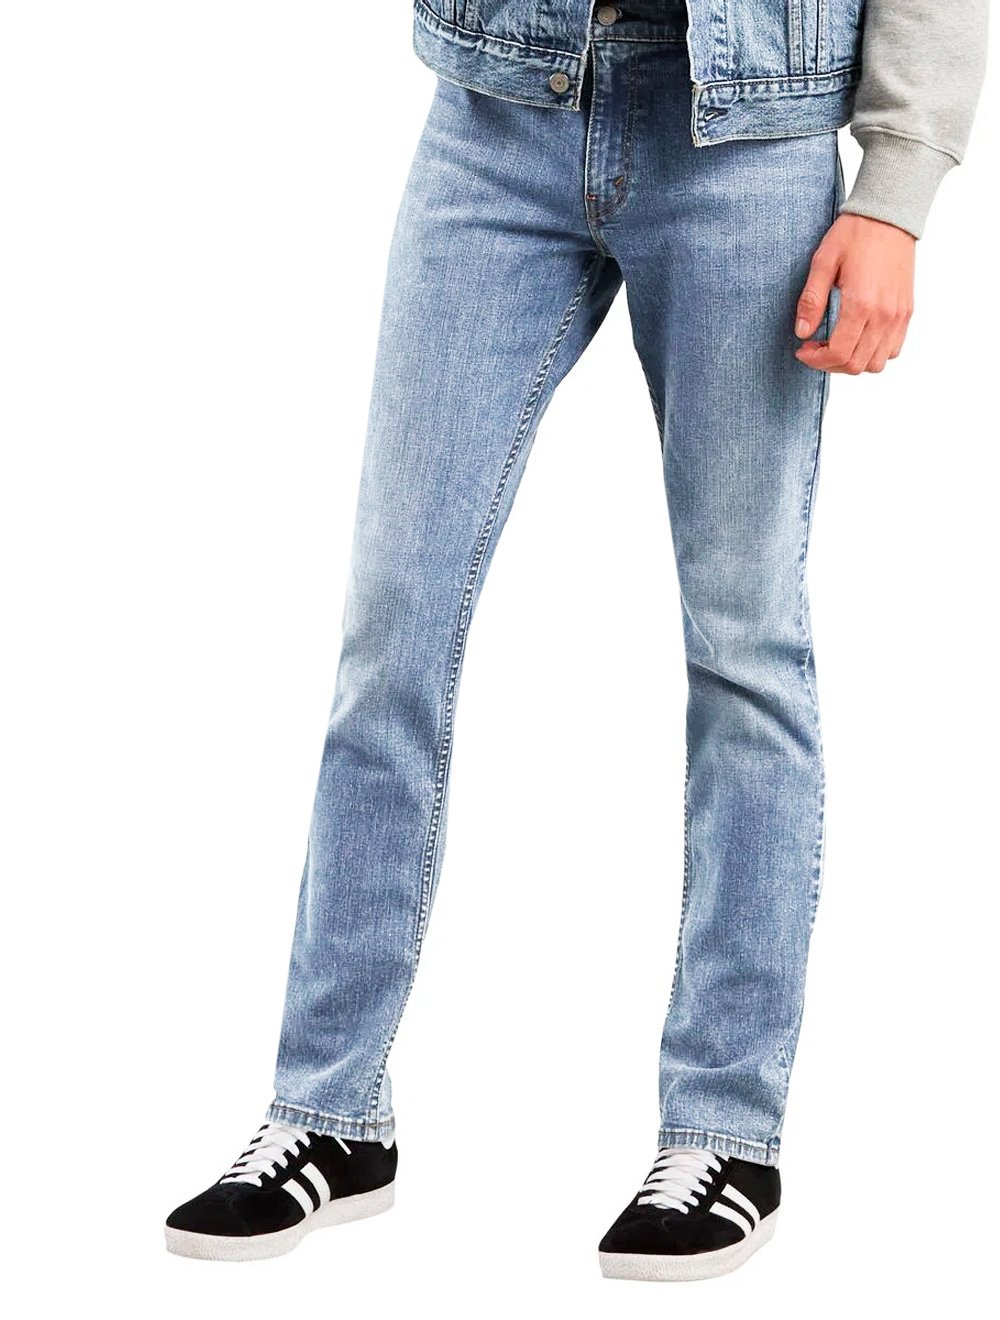 Calça Levis Jeans Masculina 511 Slim Stretch Wear Blue Azul